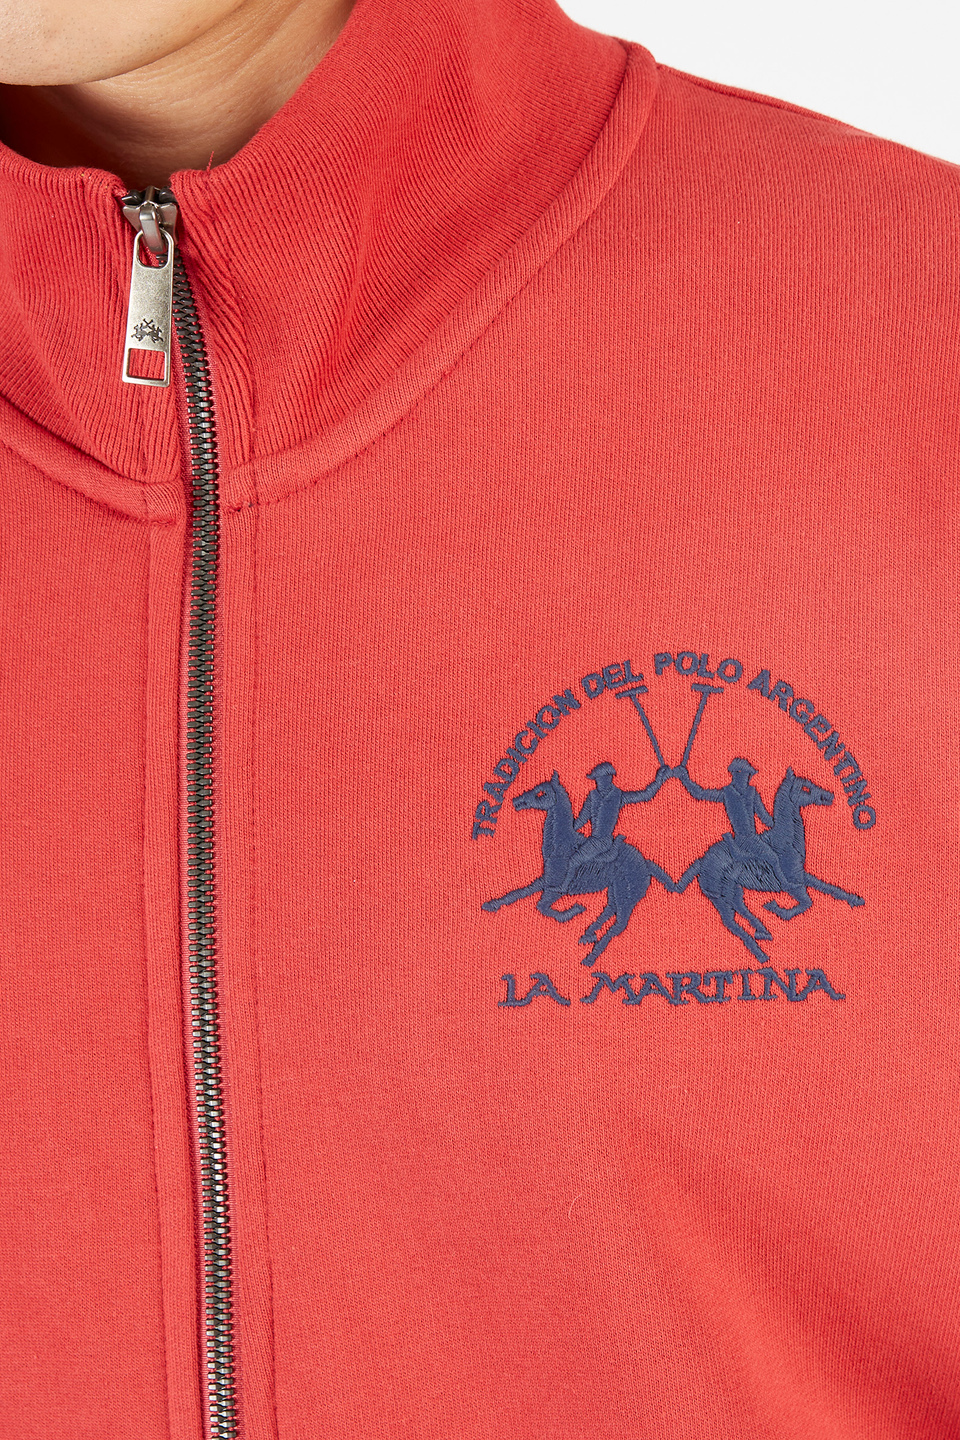 Felpa uomo Essential a maniche lunghe in cotone misto full-zip | La Martina - Official Online Shop